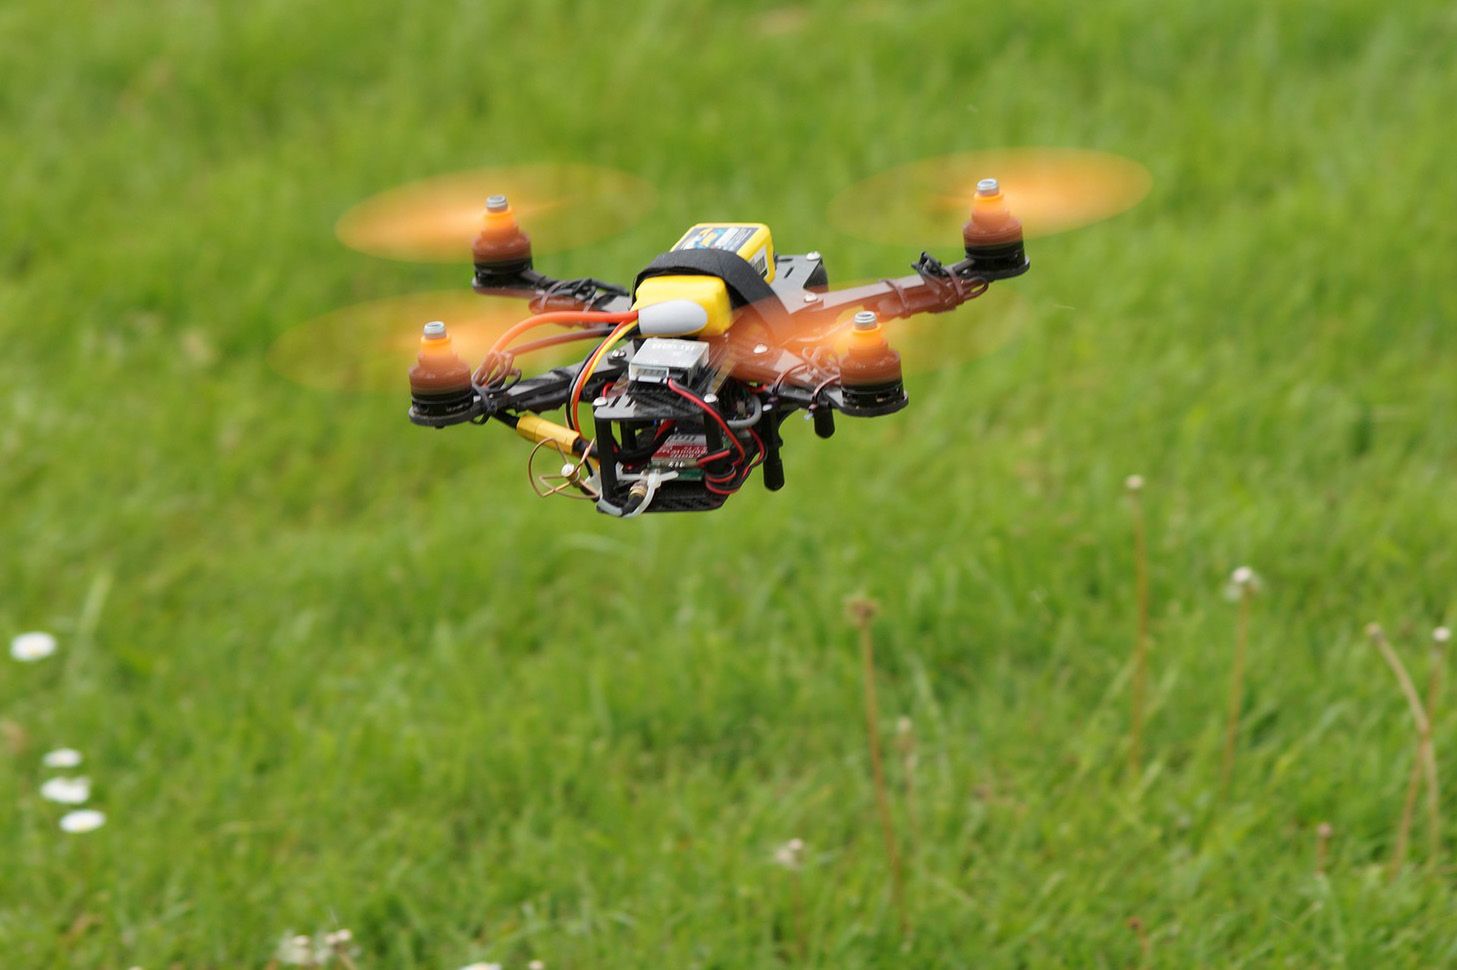 15-latek wygrał ćwierć miliona dolarów na wyścigach dronów